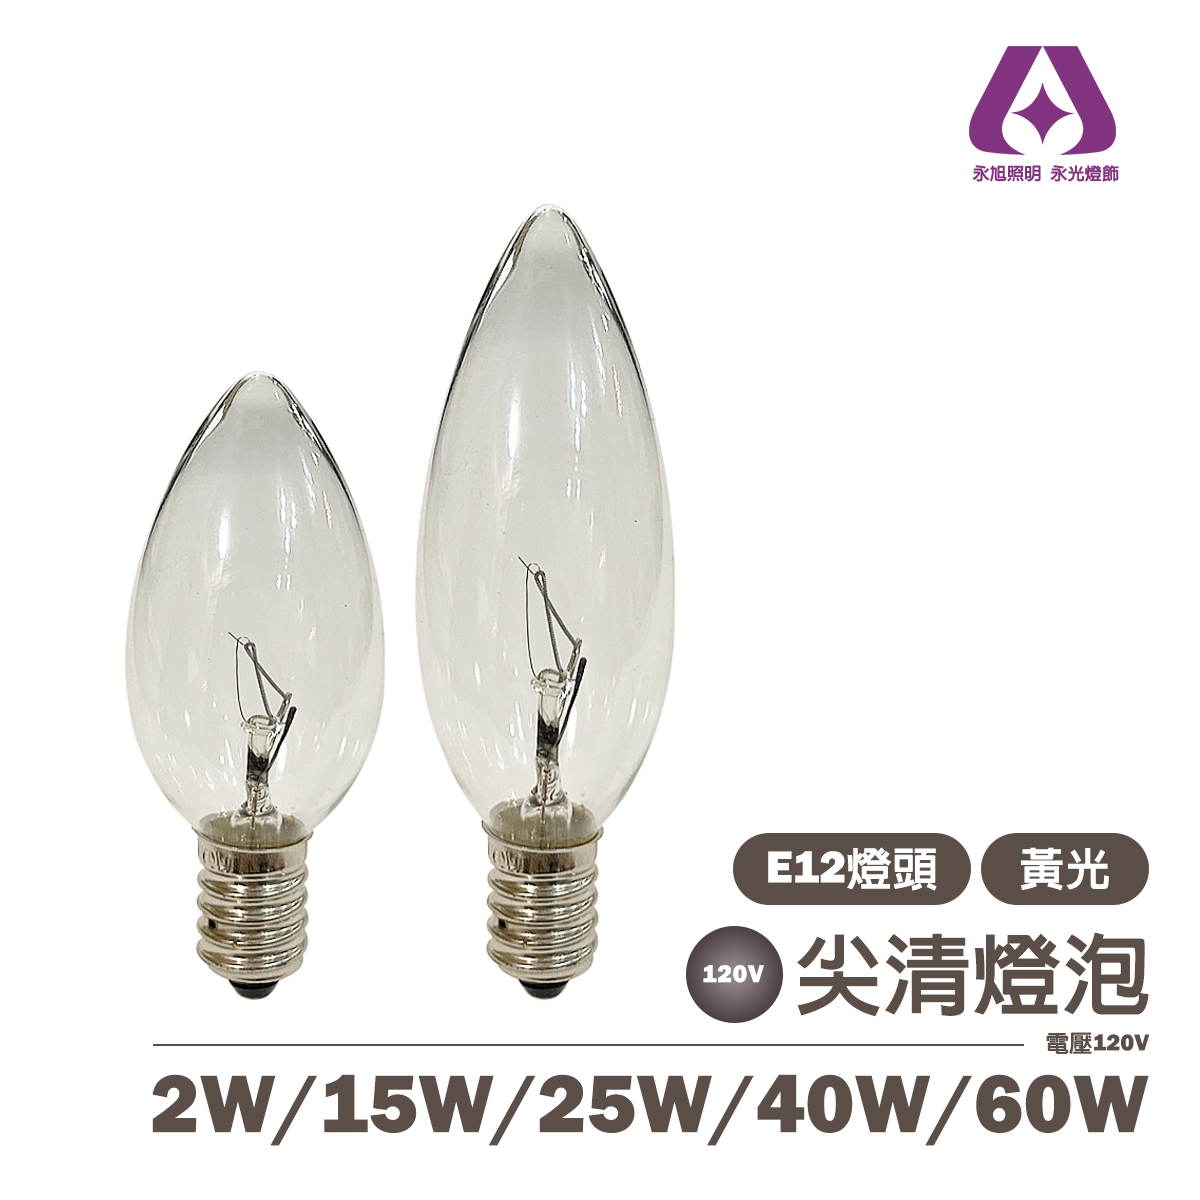 E12 2W/15W/25W/40W/60W 傳統鎢絲燈泡 尖清 電壓110V 夜燈 神明燈 可調光